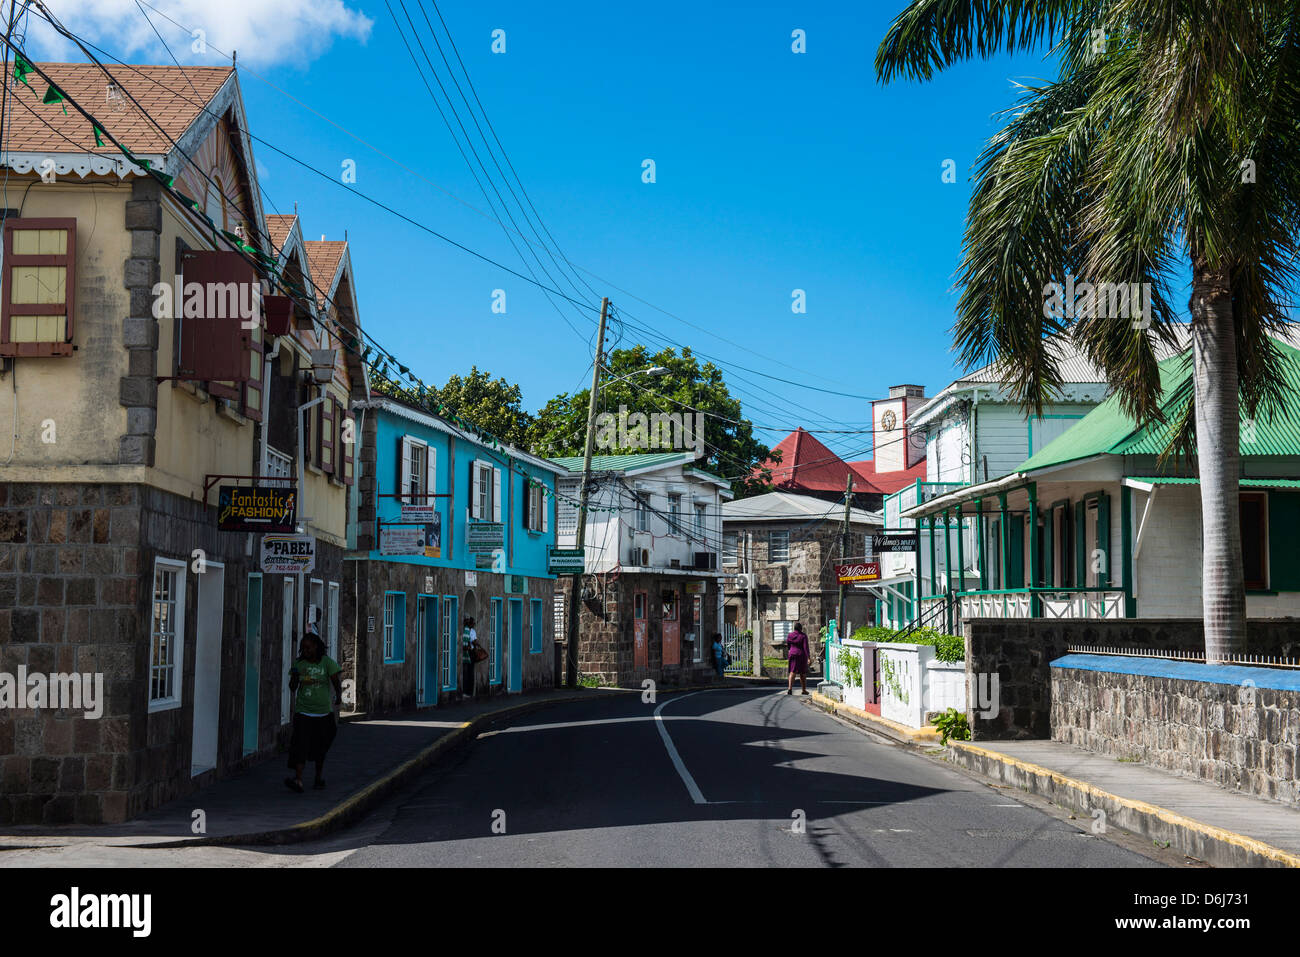 Le centre-ville de Charlestown, capitale de l'île de Nevis, Saint Kitts et Nevis, Iles sous le vent, Antilles, Caraïbes, Amérique Centrale Banque D'Images